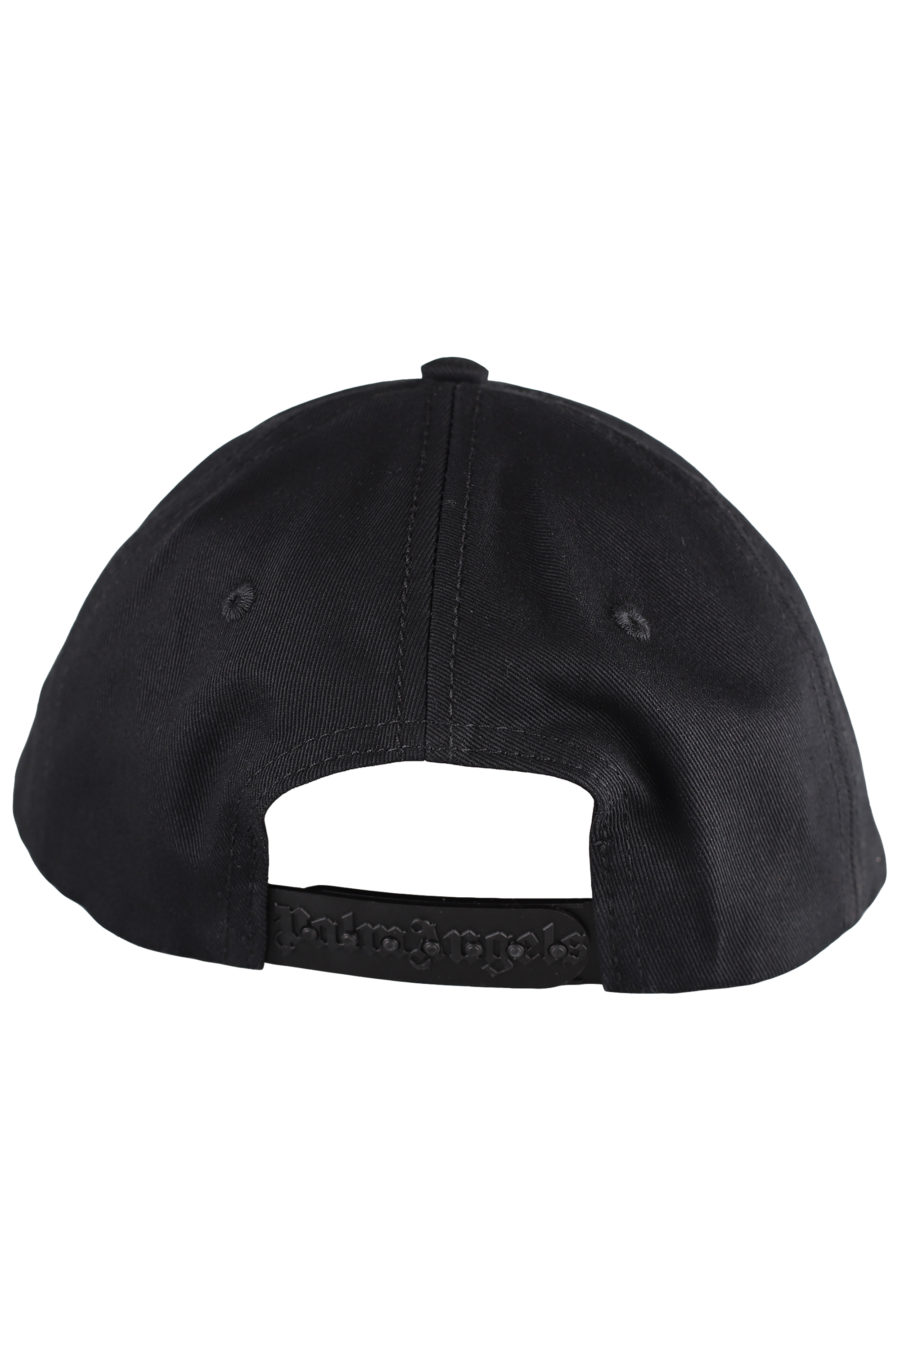 Gorra negra con logo en blanco - IMG 7287